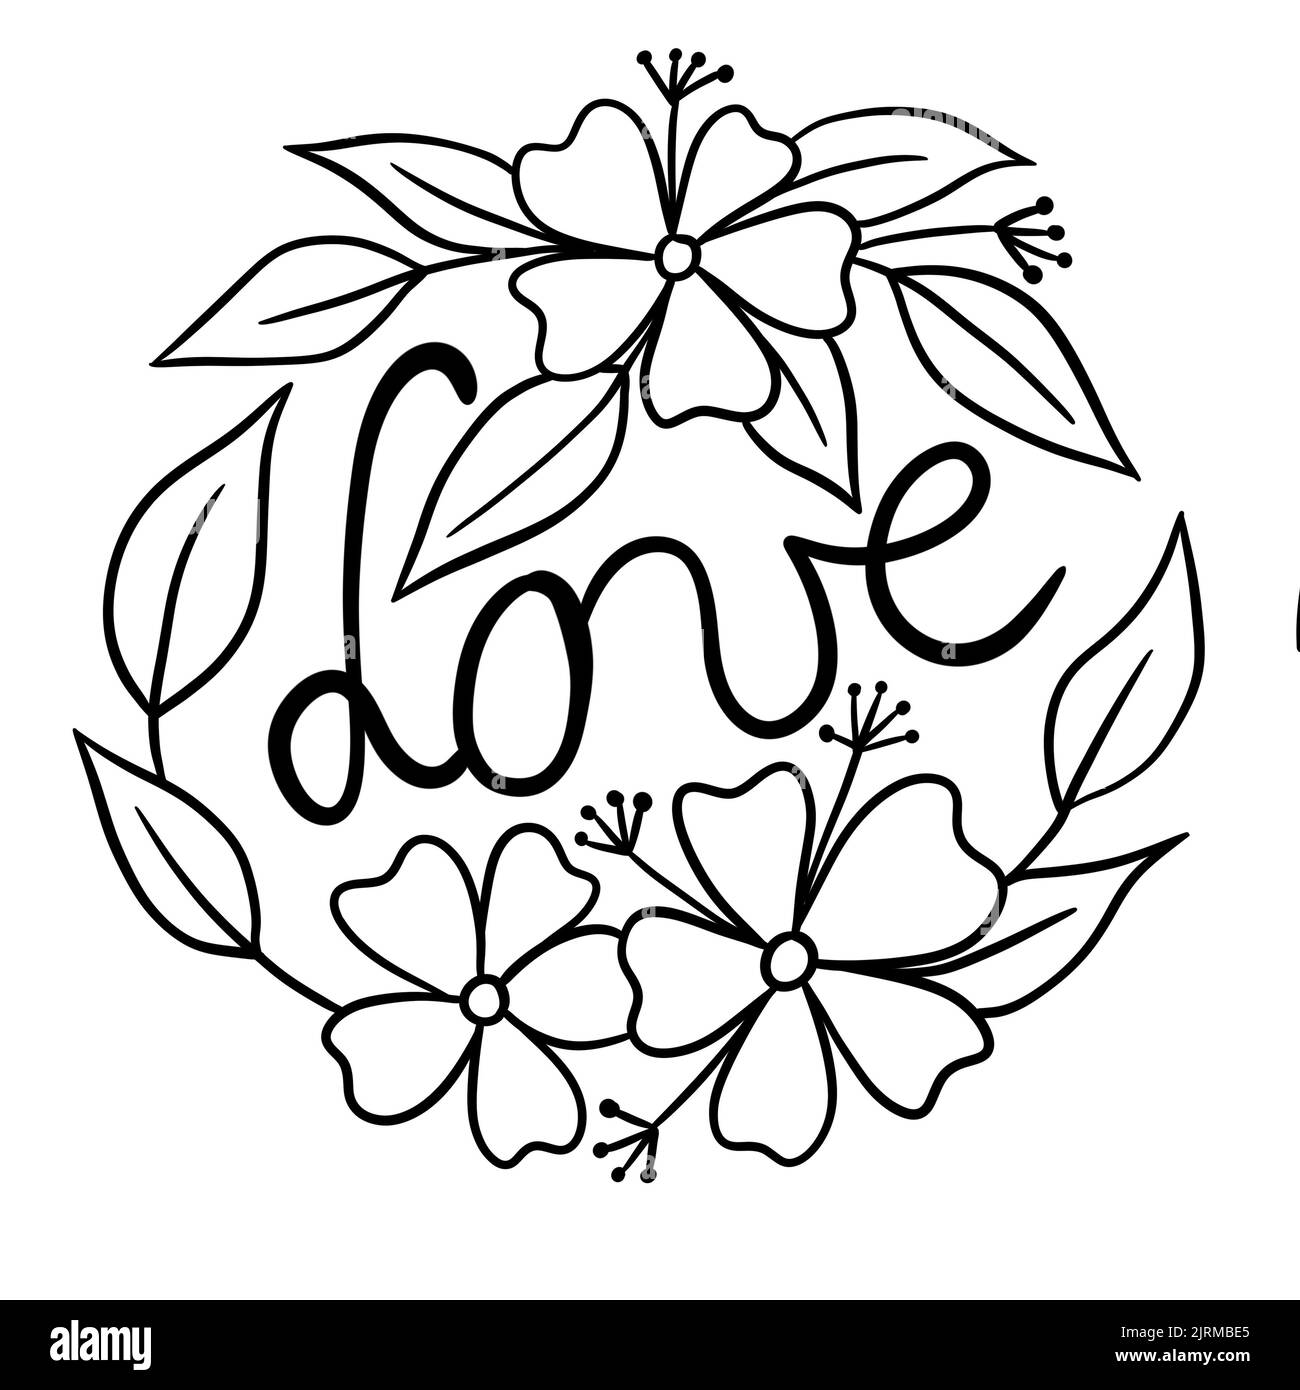 Illustration de cercle rond avec mot d'amour de fleurs. Motif floral noir pour les cartes de Saint-Valentin avec feuilles fleuries, imprimé simple minimaliste Banque D'Images